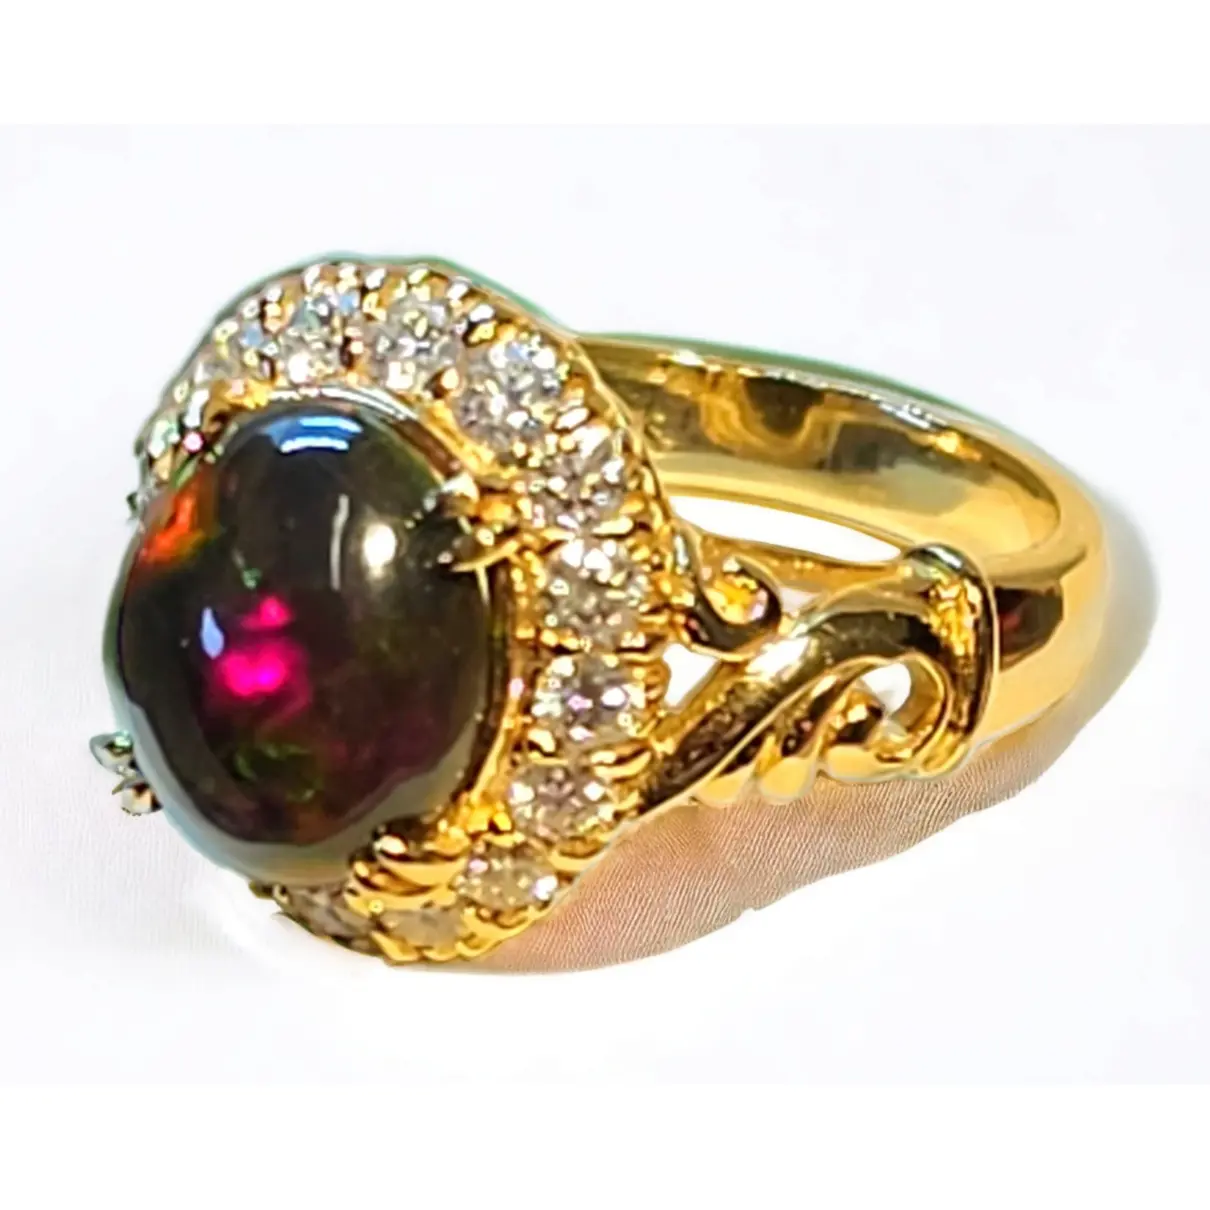 Buy Hatton Garden Yellow gold ring online